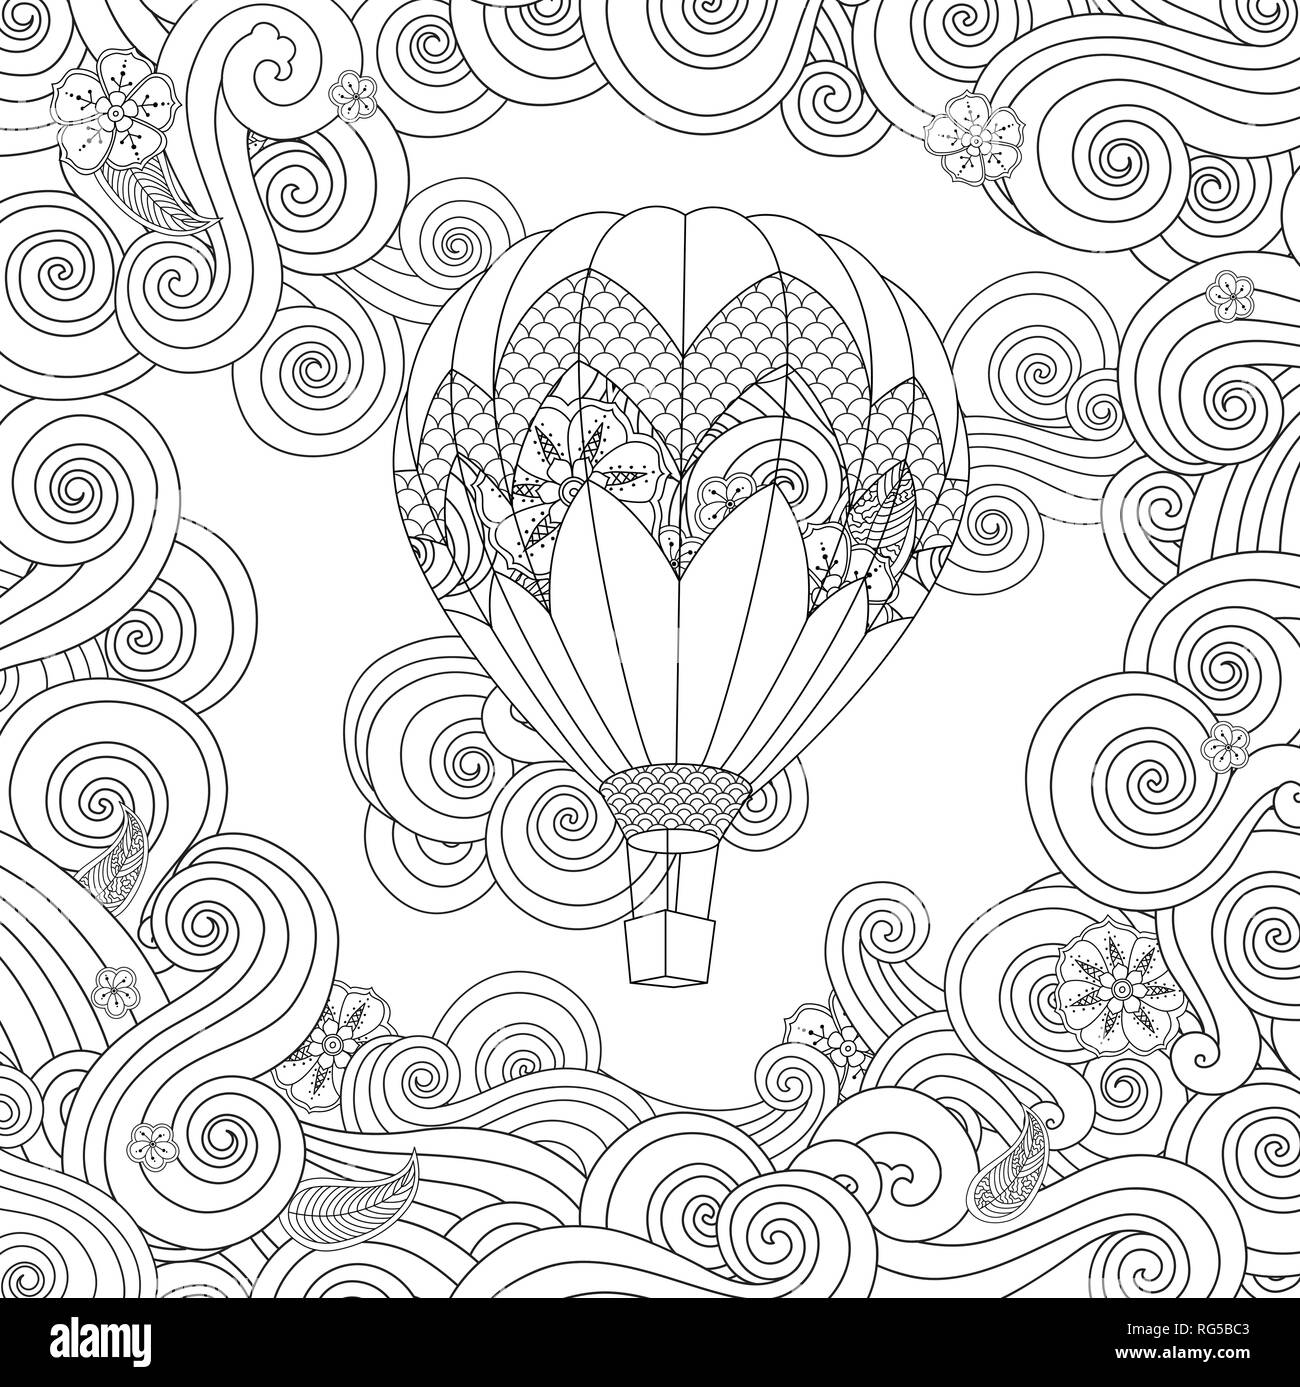 Mongolfiera in zentangle ispirato doodle style isolato su bianco. Libro da colorare pagina per pazienti adulti e bambini di età superiore. Illustrazione Vettoriale